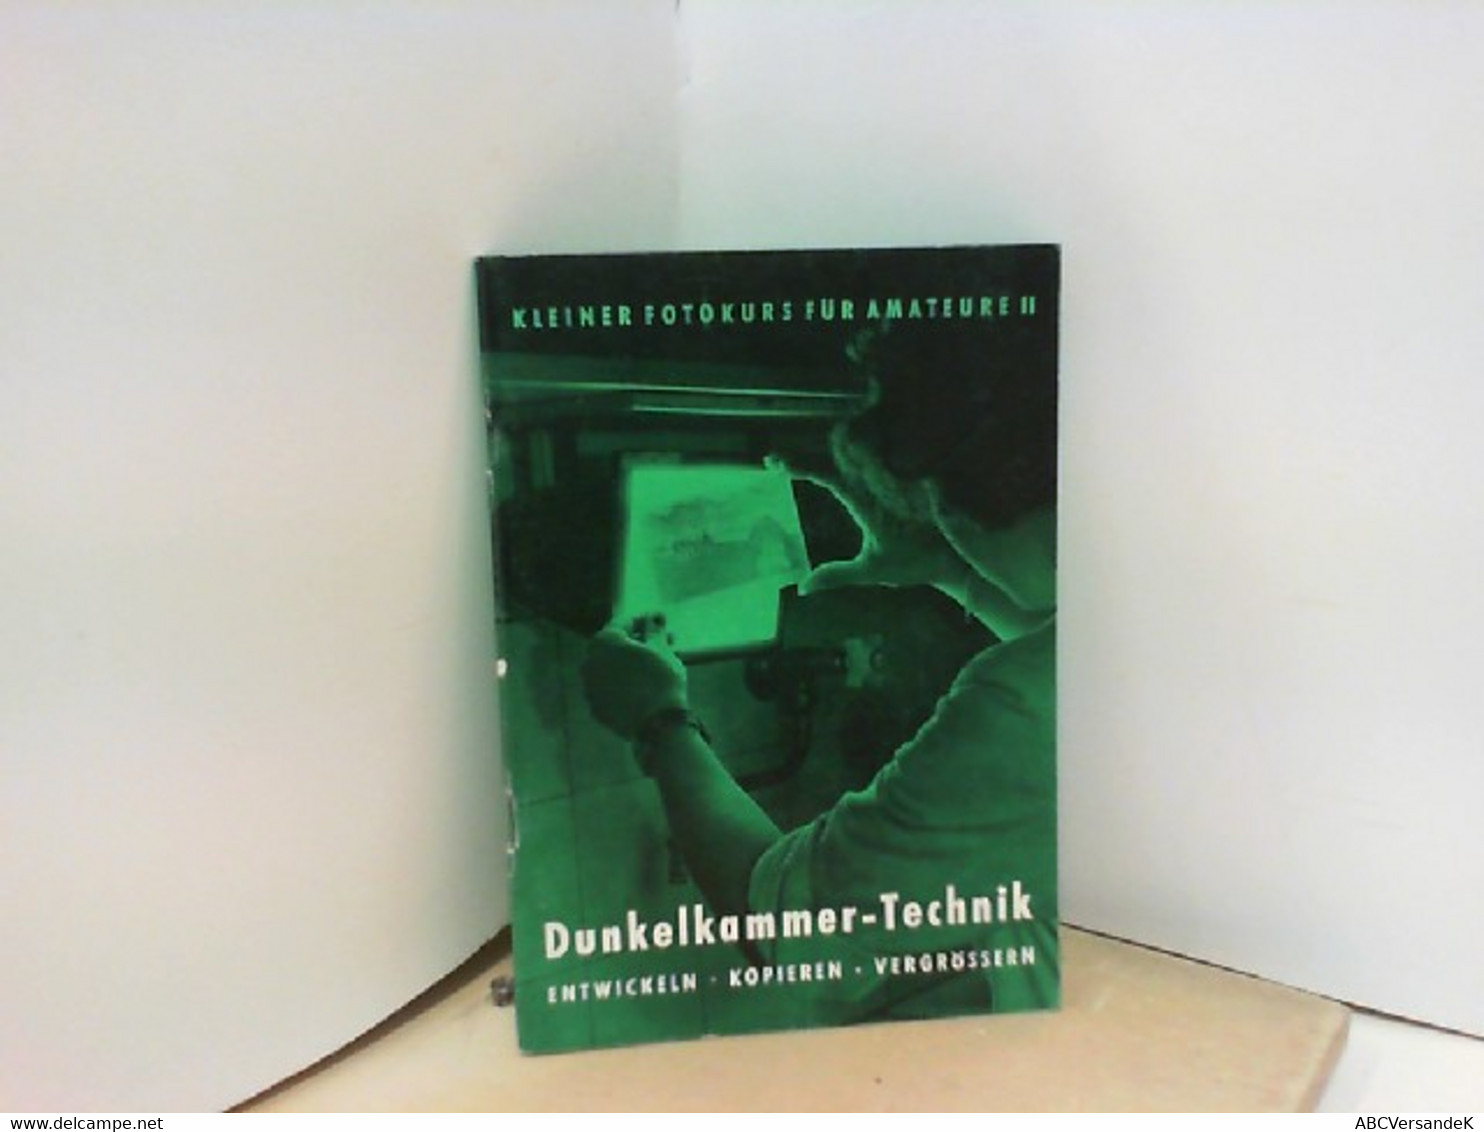 Dunkelkammer-Technik Heinrich Stöckler - Fotografie